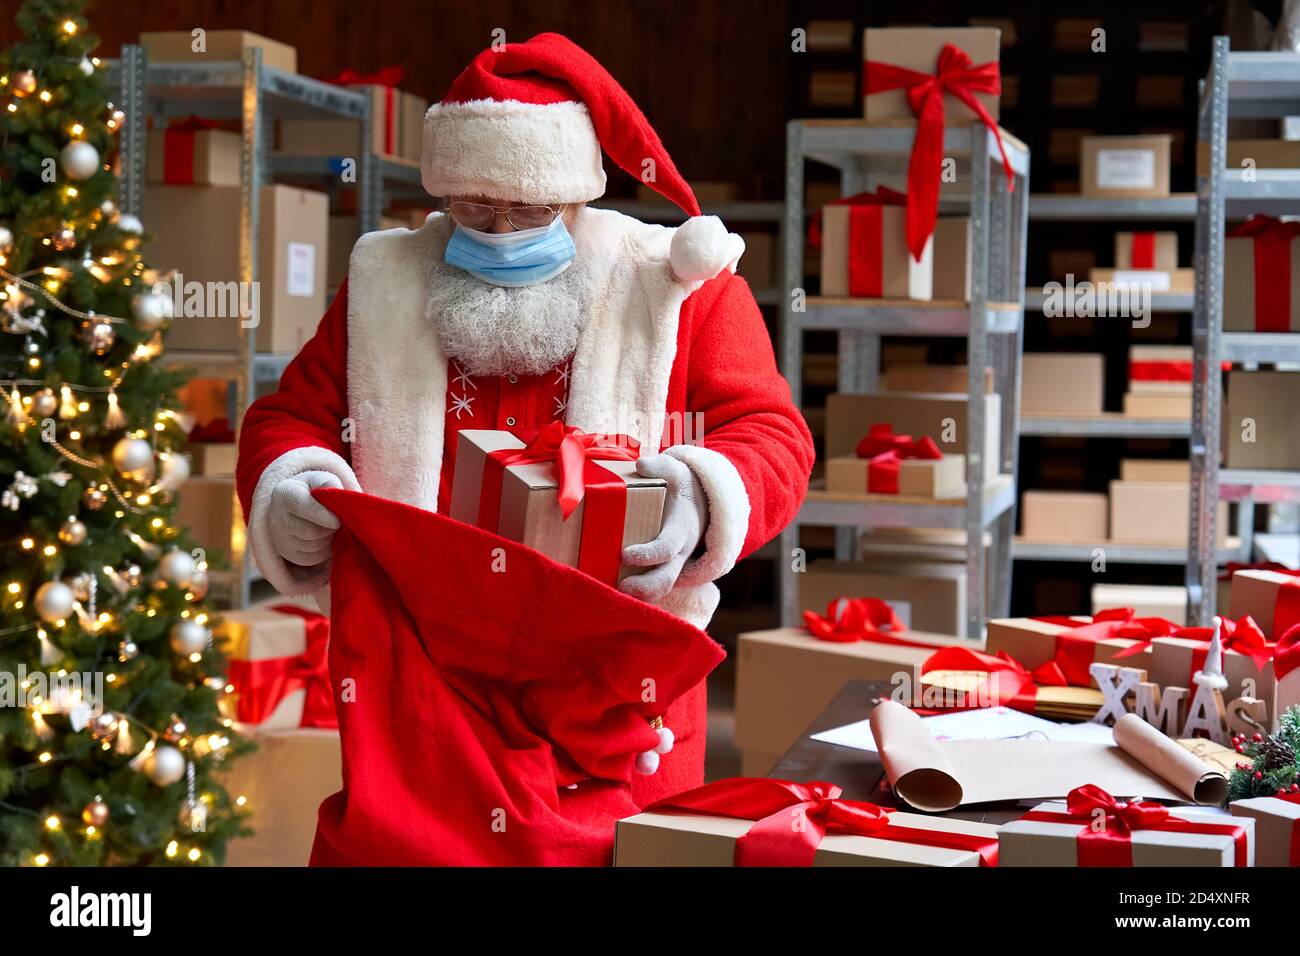 Santa trägt Kostüm Gesichtsmaske Verpackung Geschenke in der Tasche. Sichere Lieferung zu Weihnachten. Stockfoto